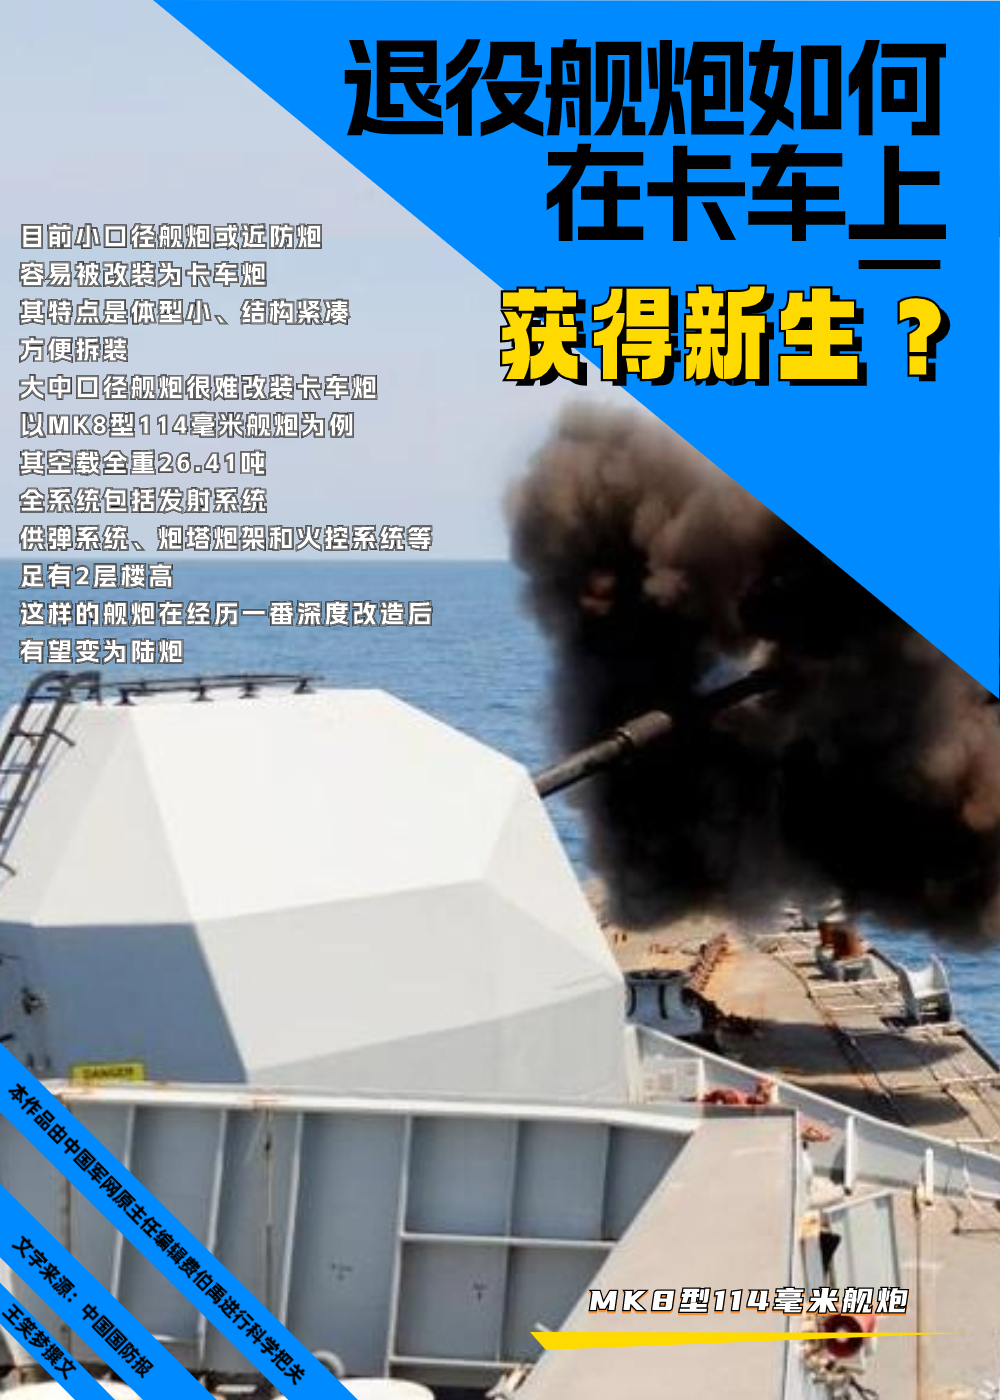 【科普中国军事科技】退役舰炮如何在卡车上获得新生？